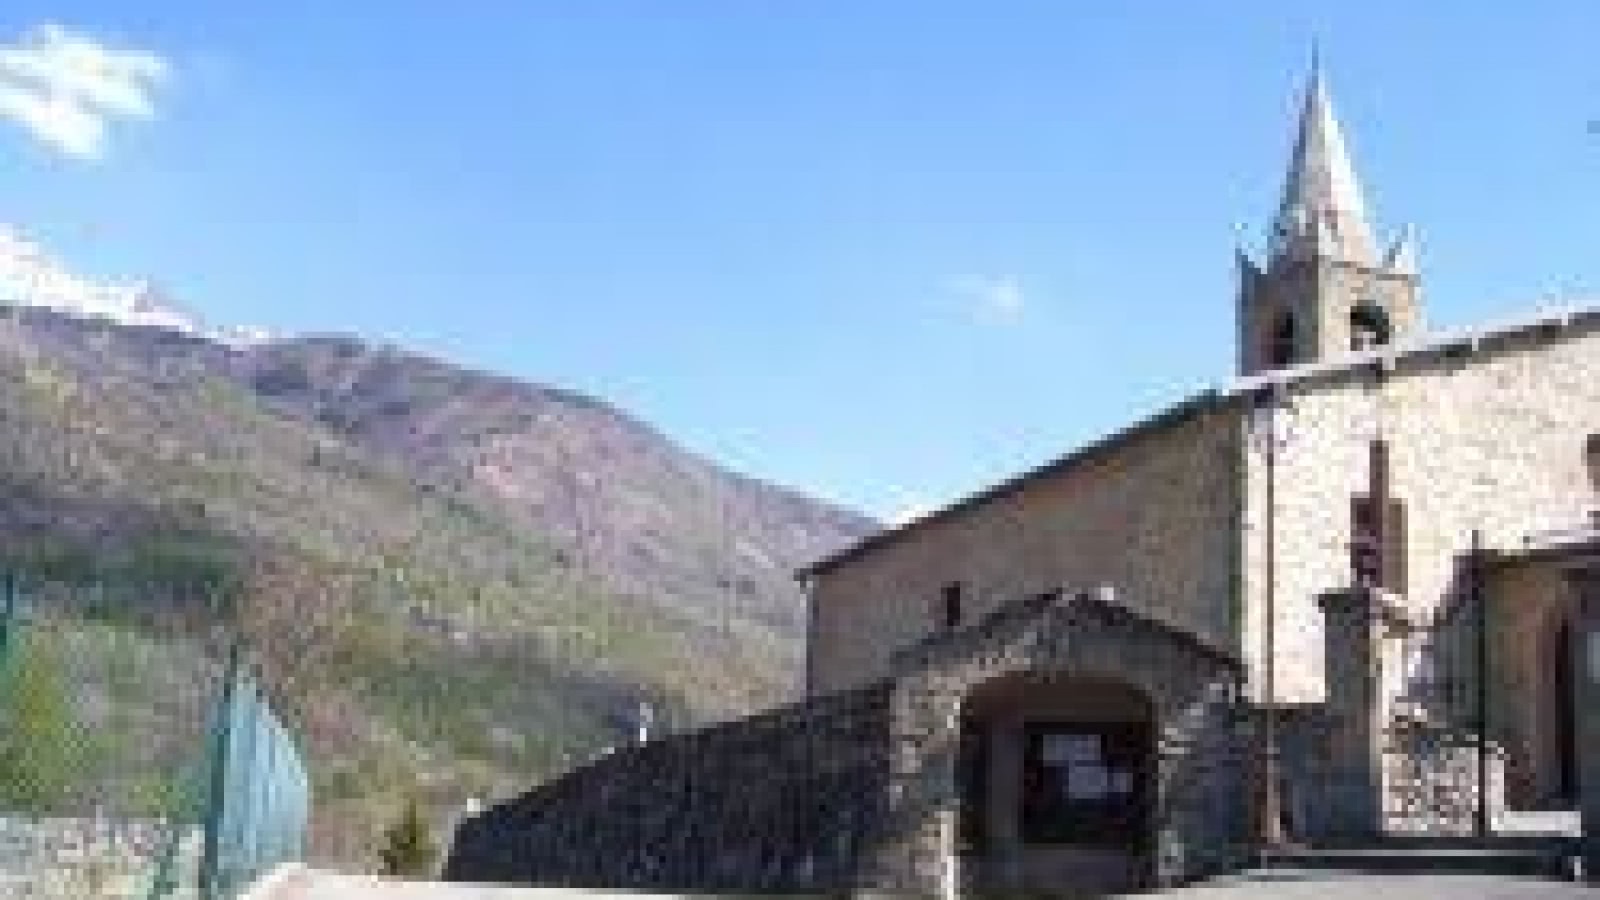 Eglise de Beaune St Michel de Maurienne visite avec Guide du Patrimoine Savoie Mont Blanc